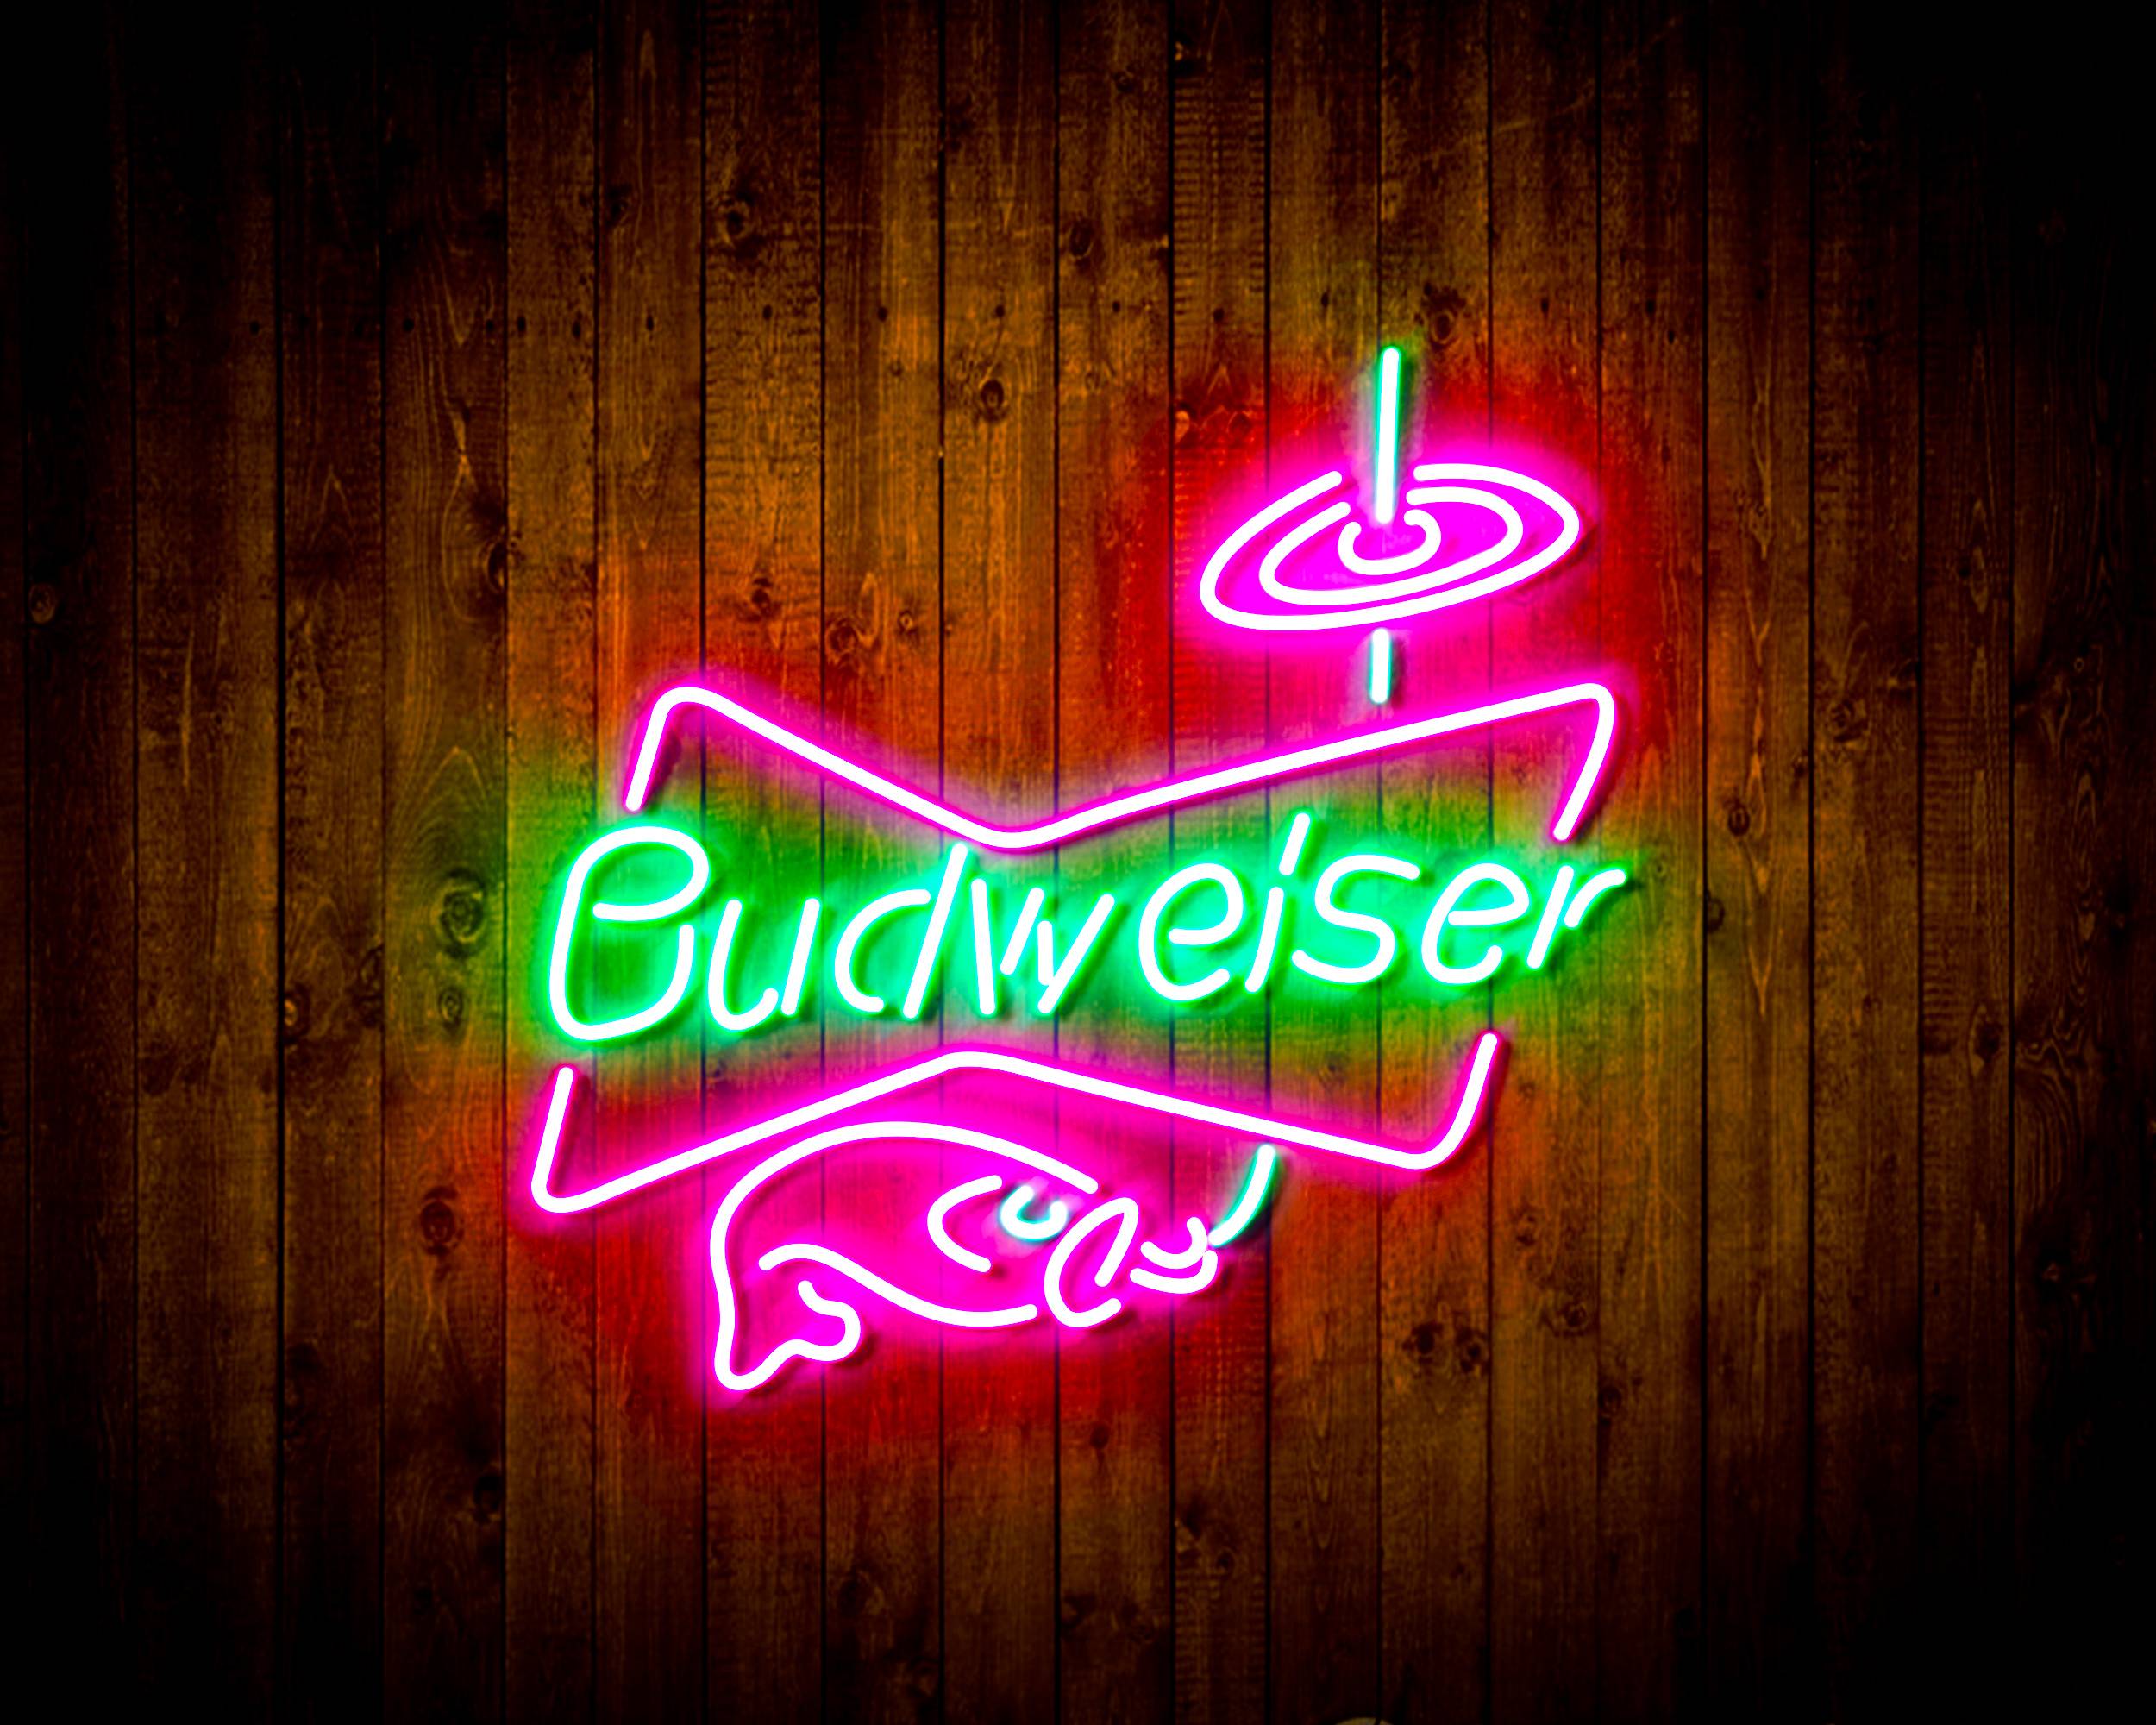 Budweiser Fishing Handmade LED Neon Light Sign